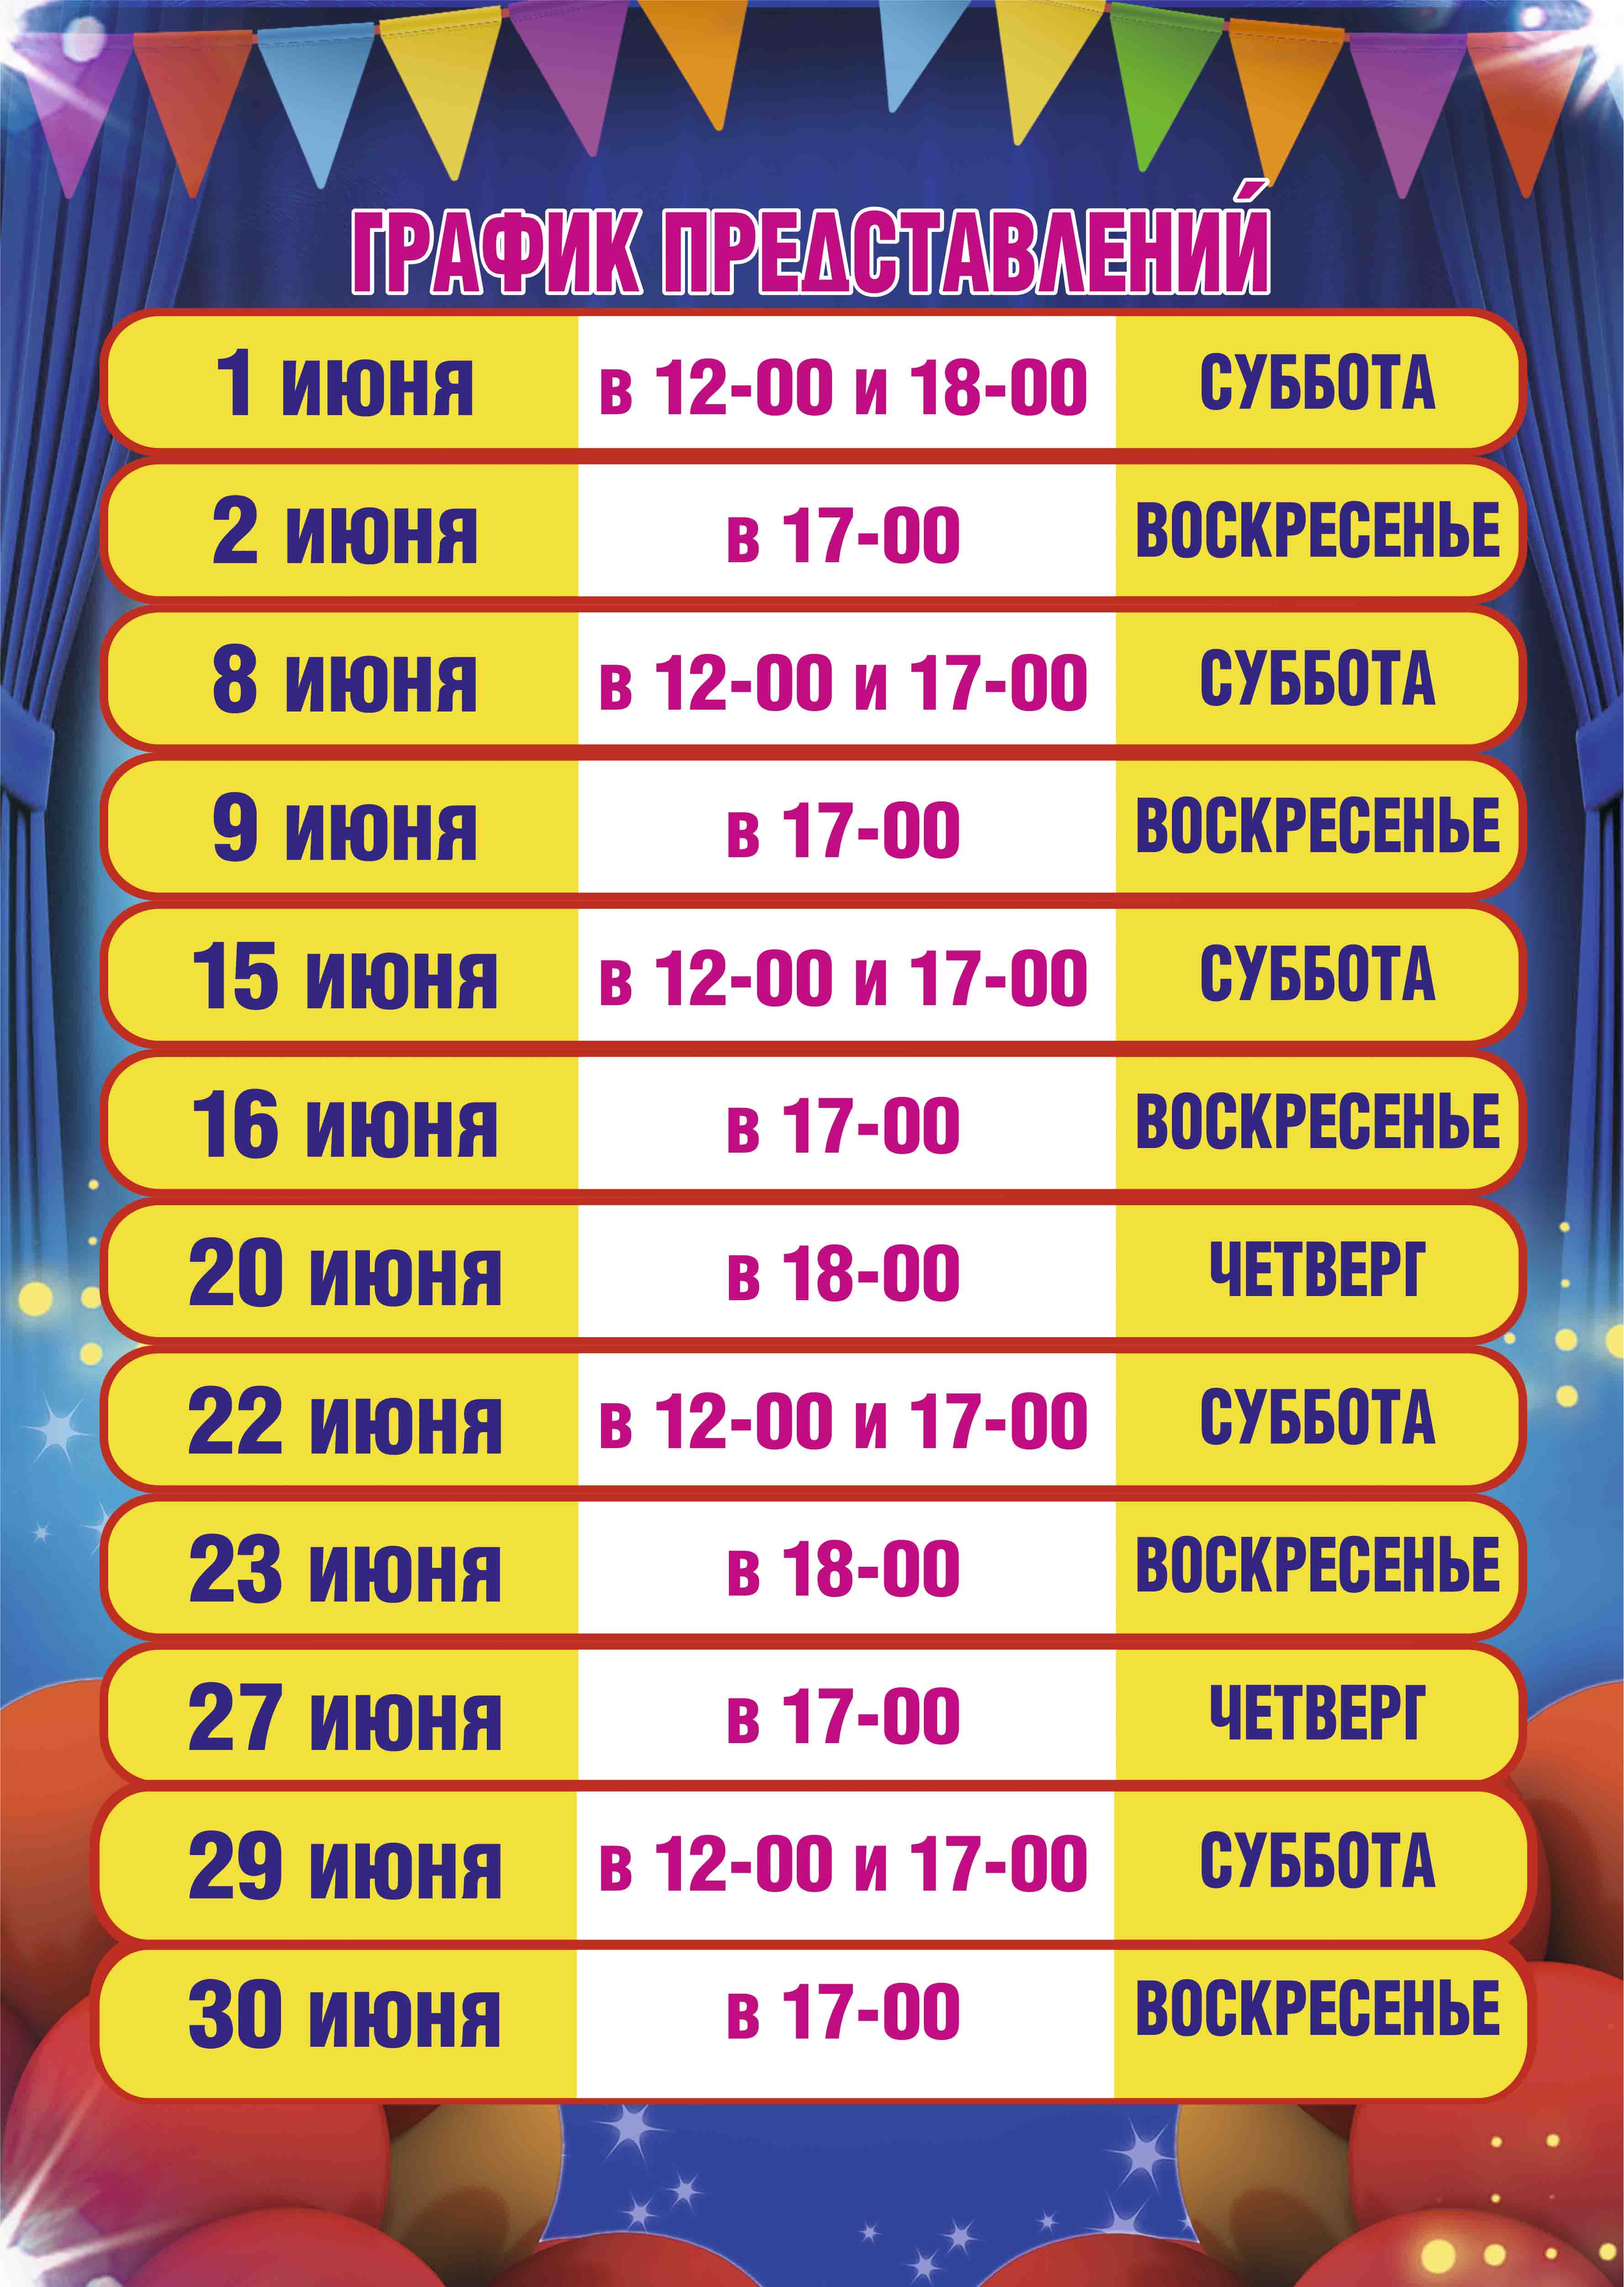 Цирк в новосибирске расписание